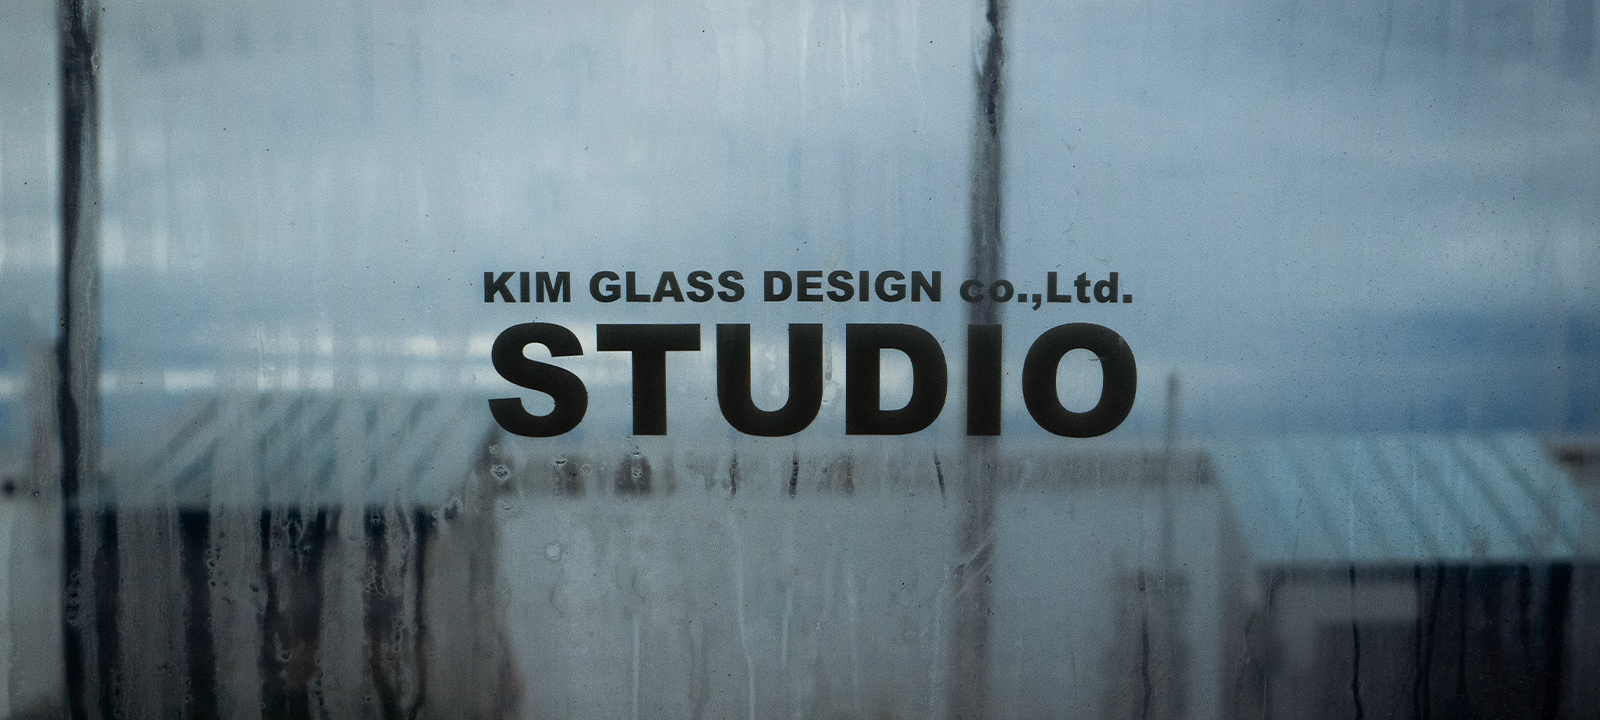 KIM GLASS DESIGN